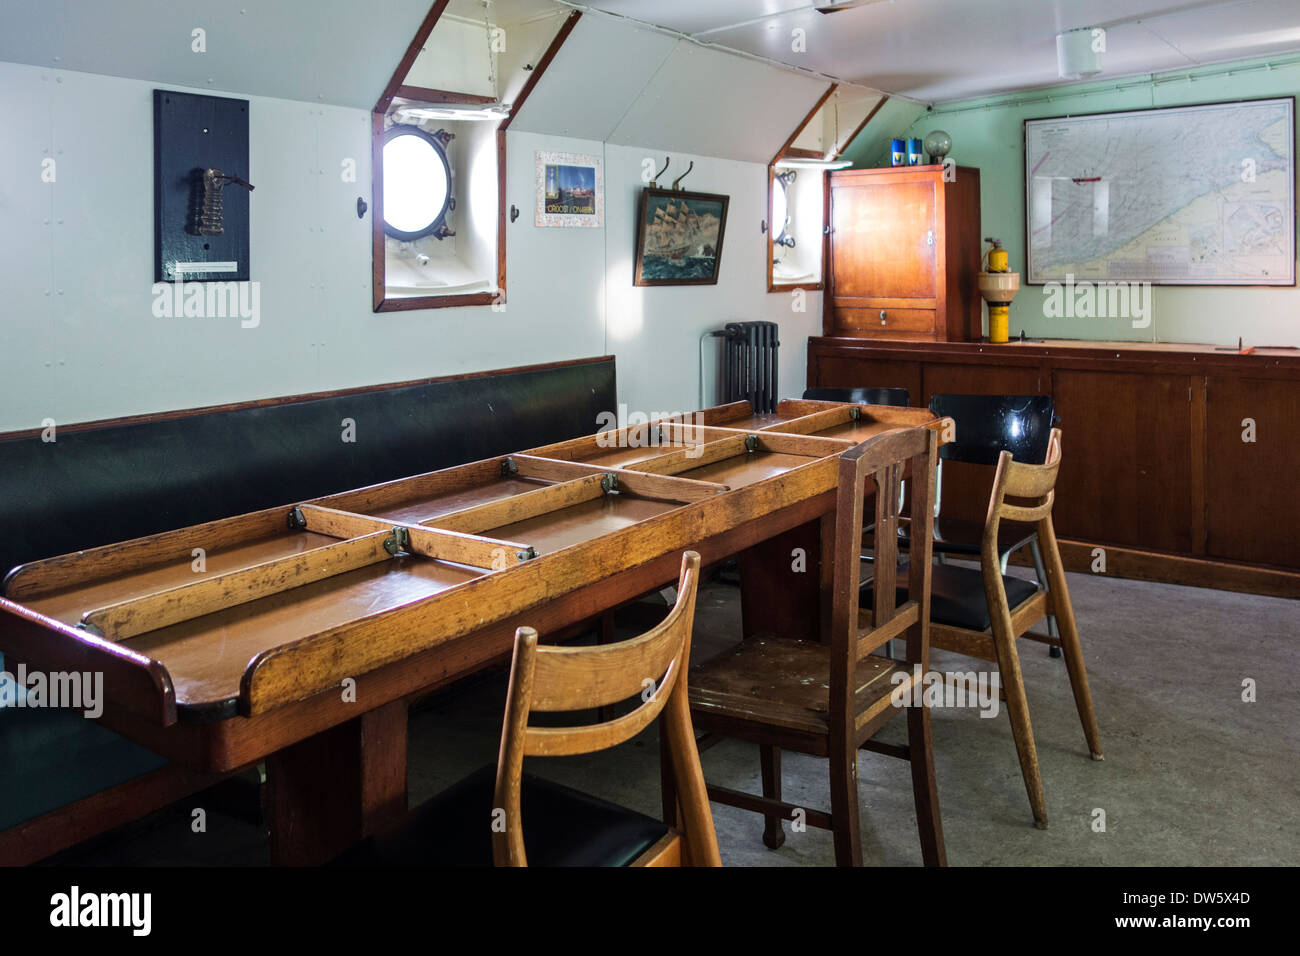 Cena speciale tabella suddivisa in compartimenti con tavole di legno per evitare che il cibo dalla scorrevolezza in sala mensa a bordo della nave Foto Stock